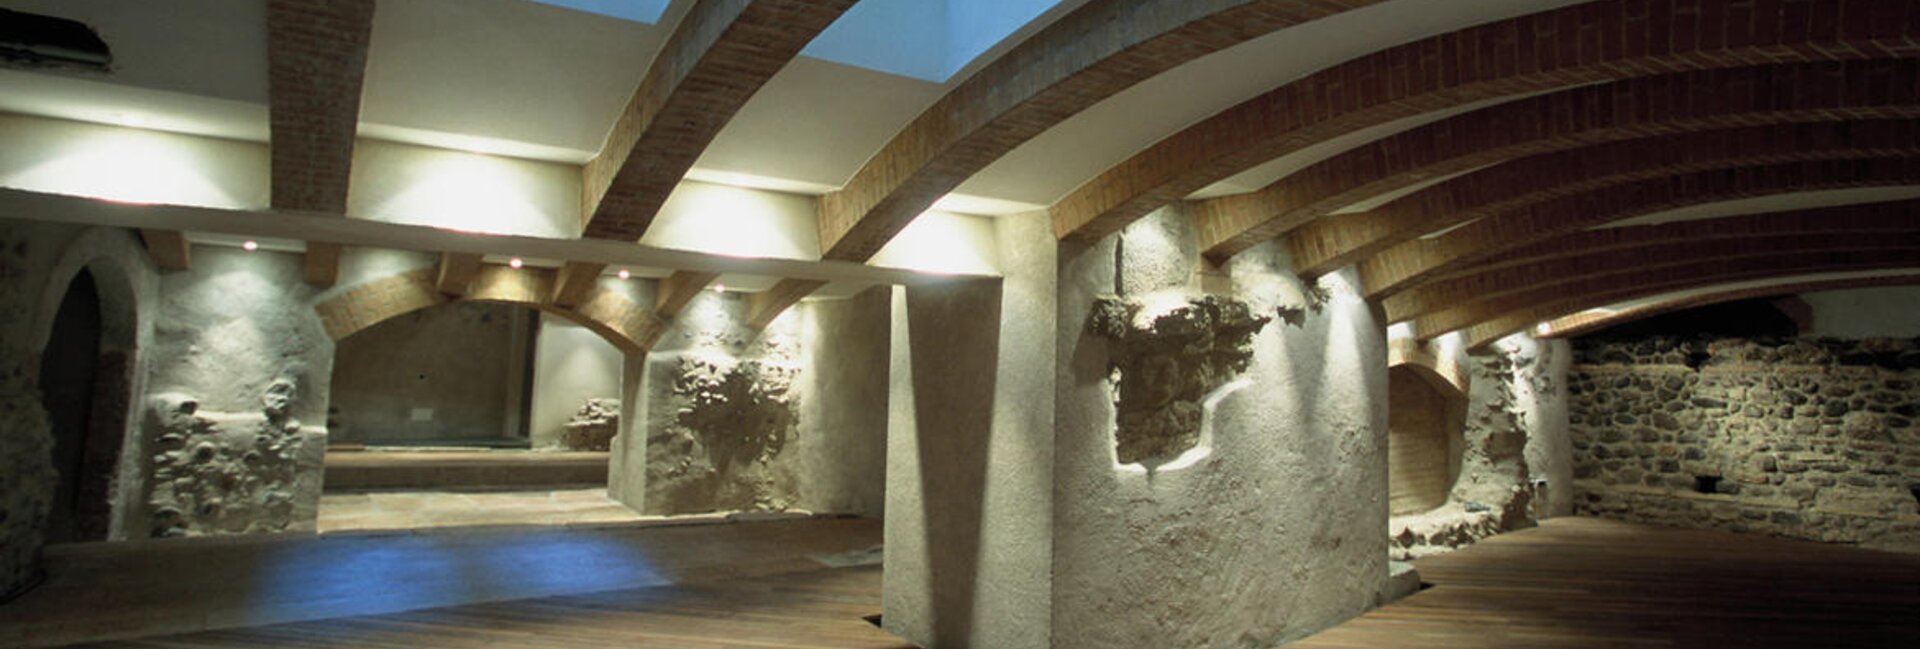 Spazio archeologico sotterraneo SASS - APT Trento | © APT Trento